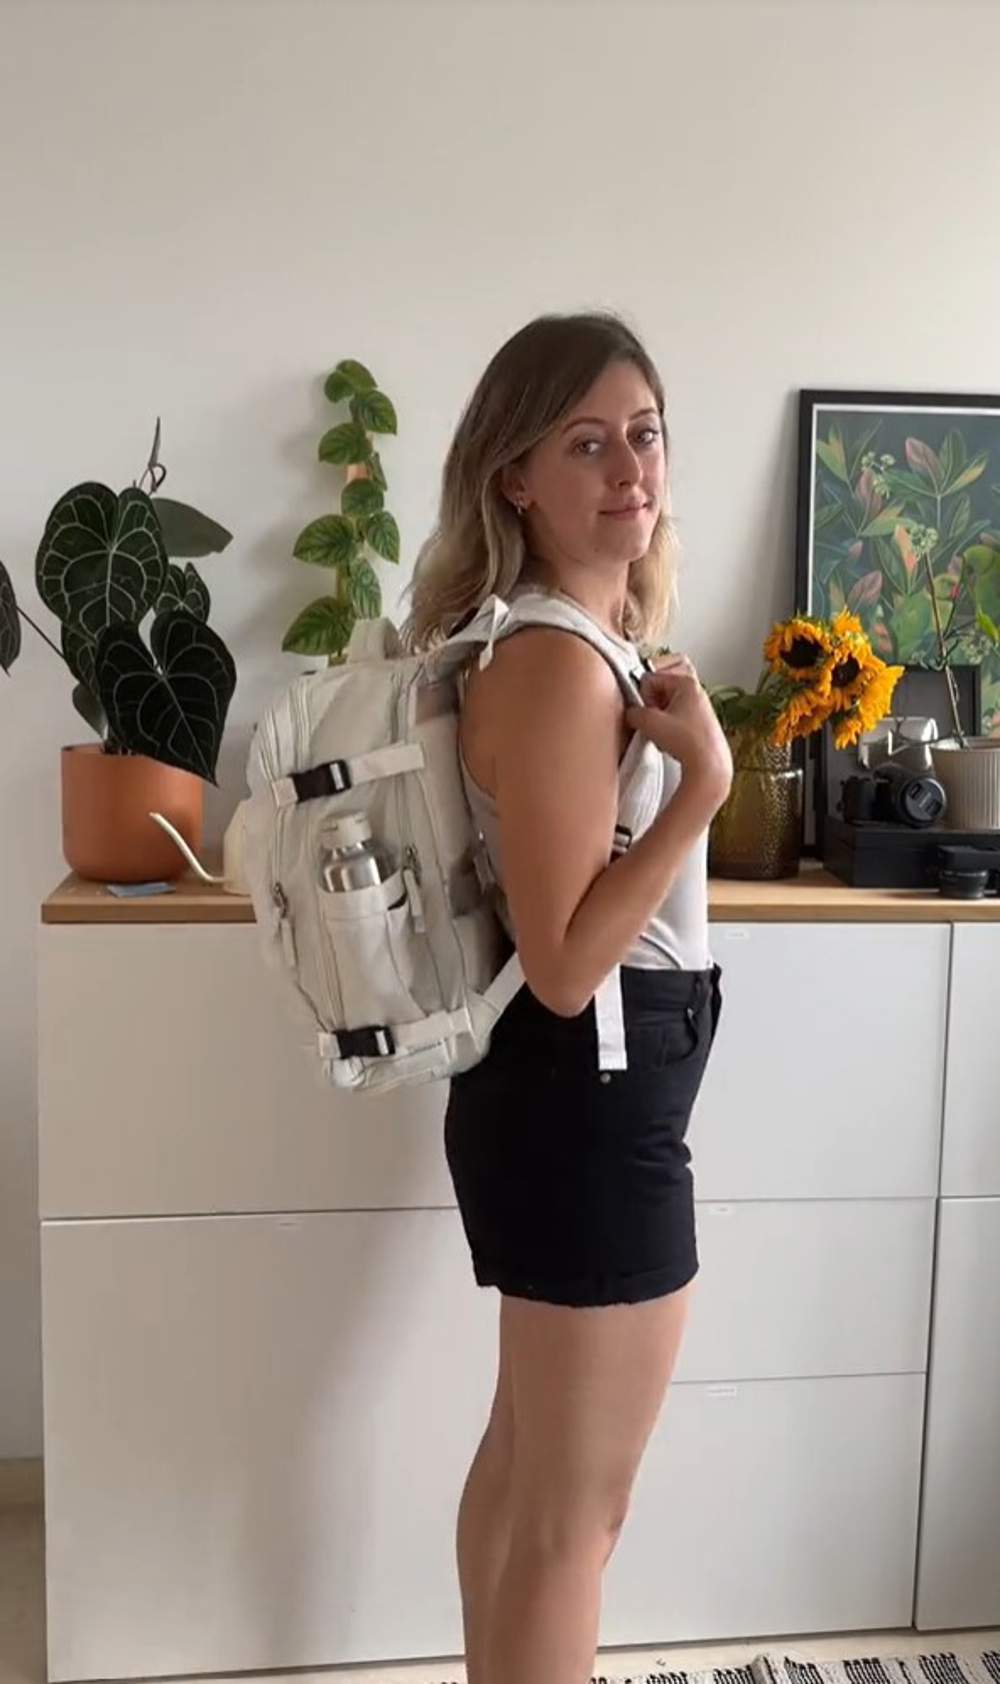  la mochila de viaje que es viral en TikTok a un precio